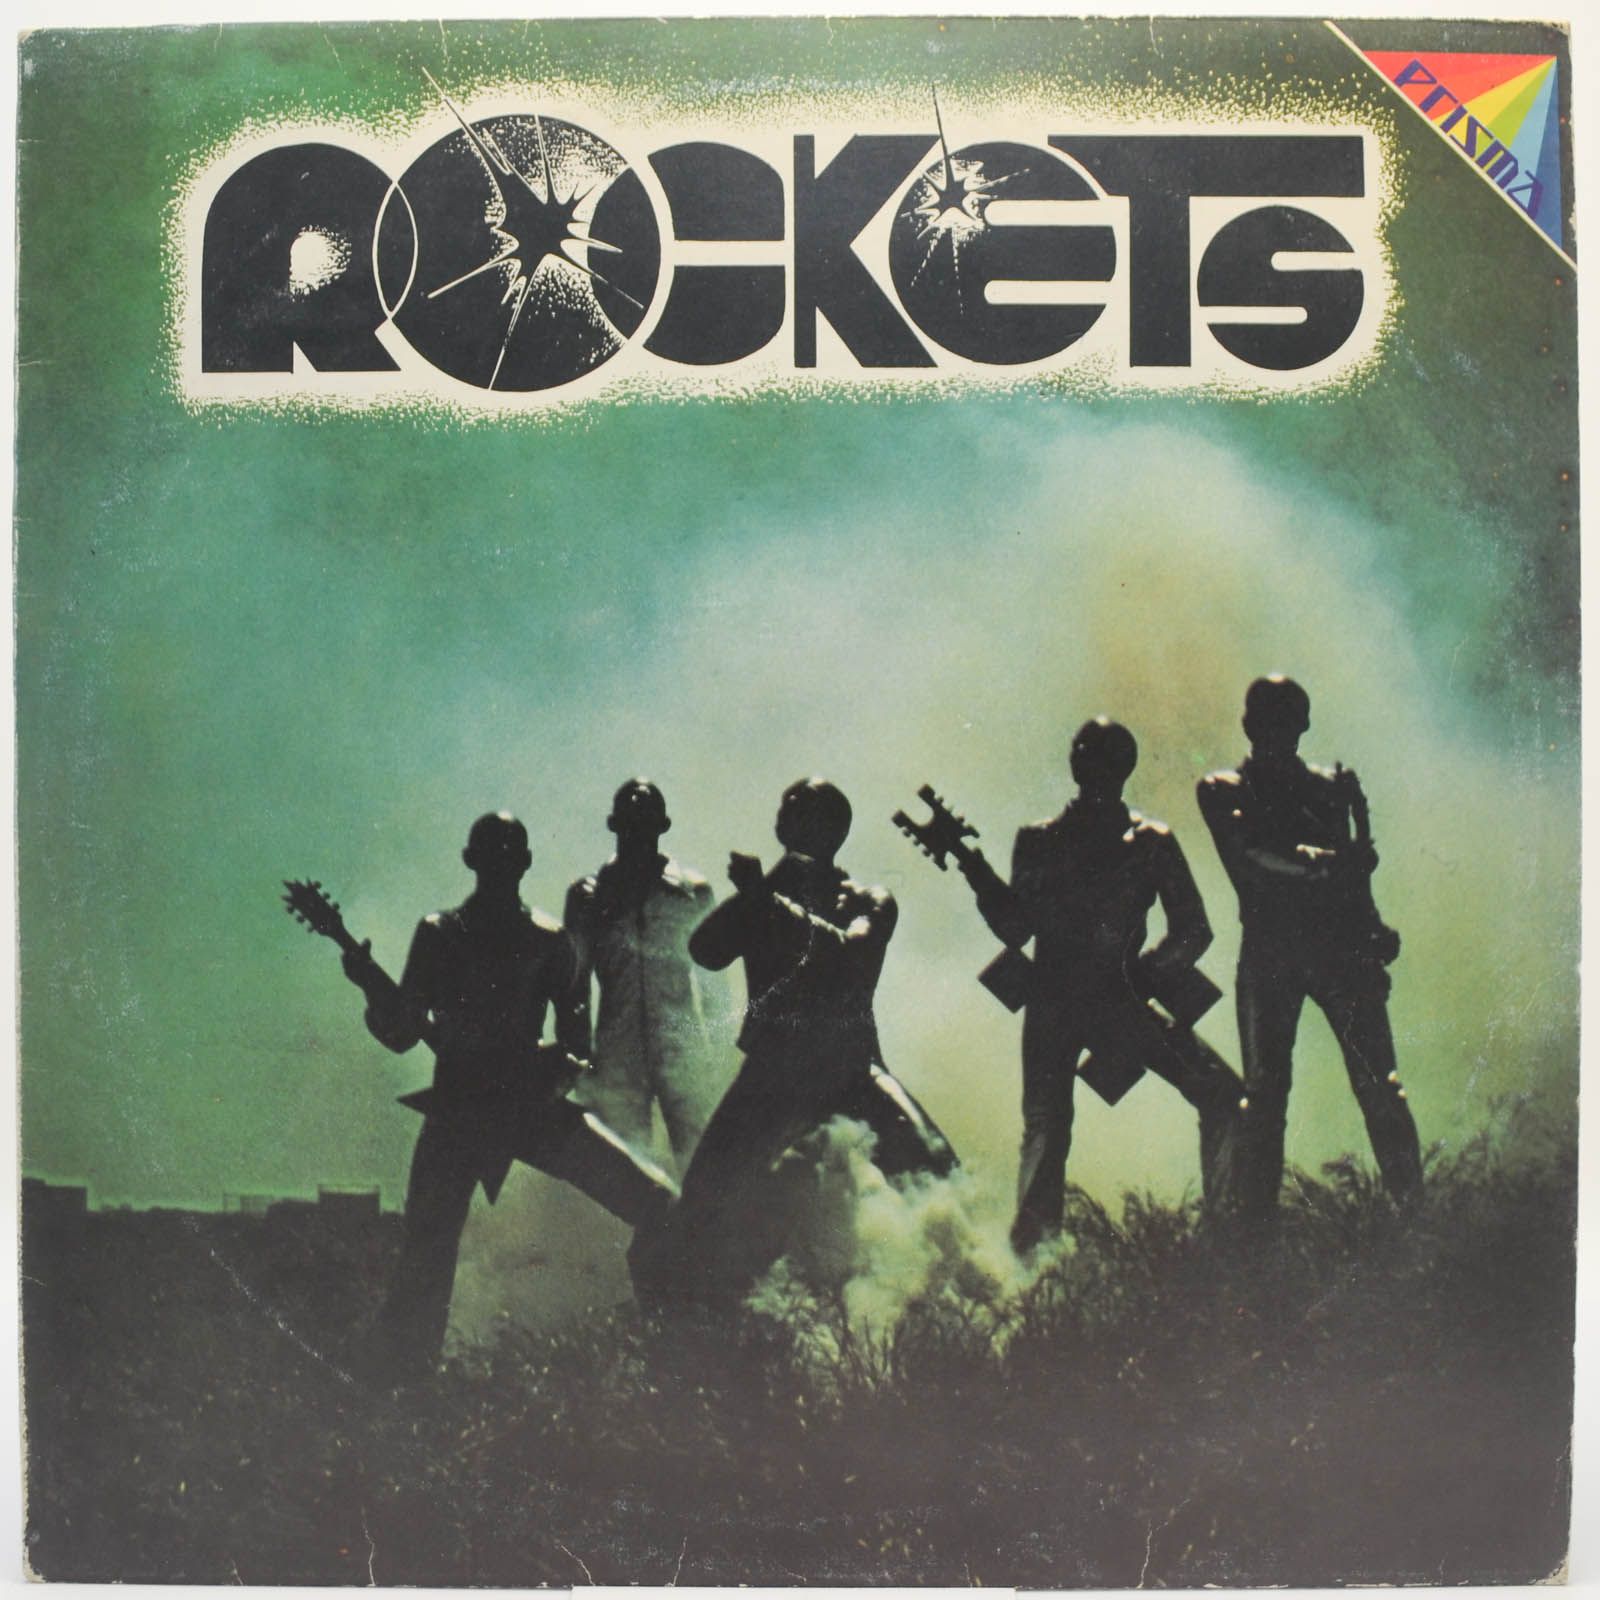 Rockets — Rockets, 1976